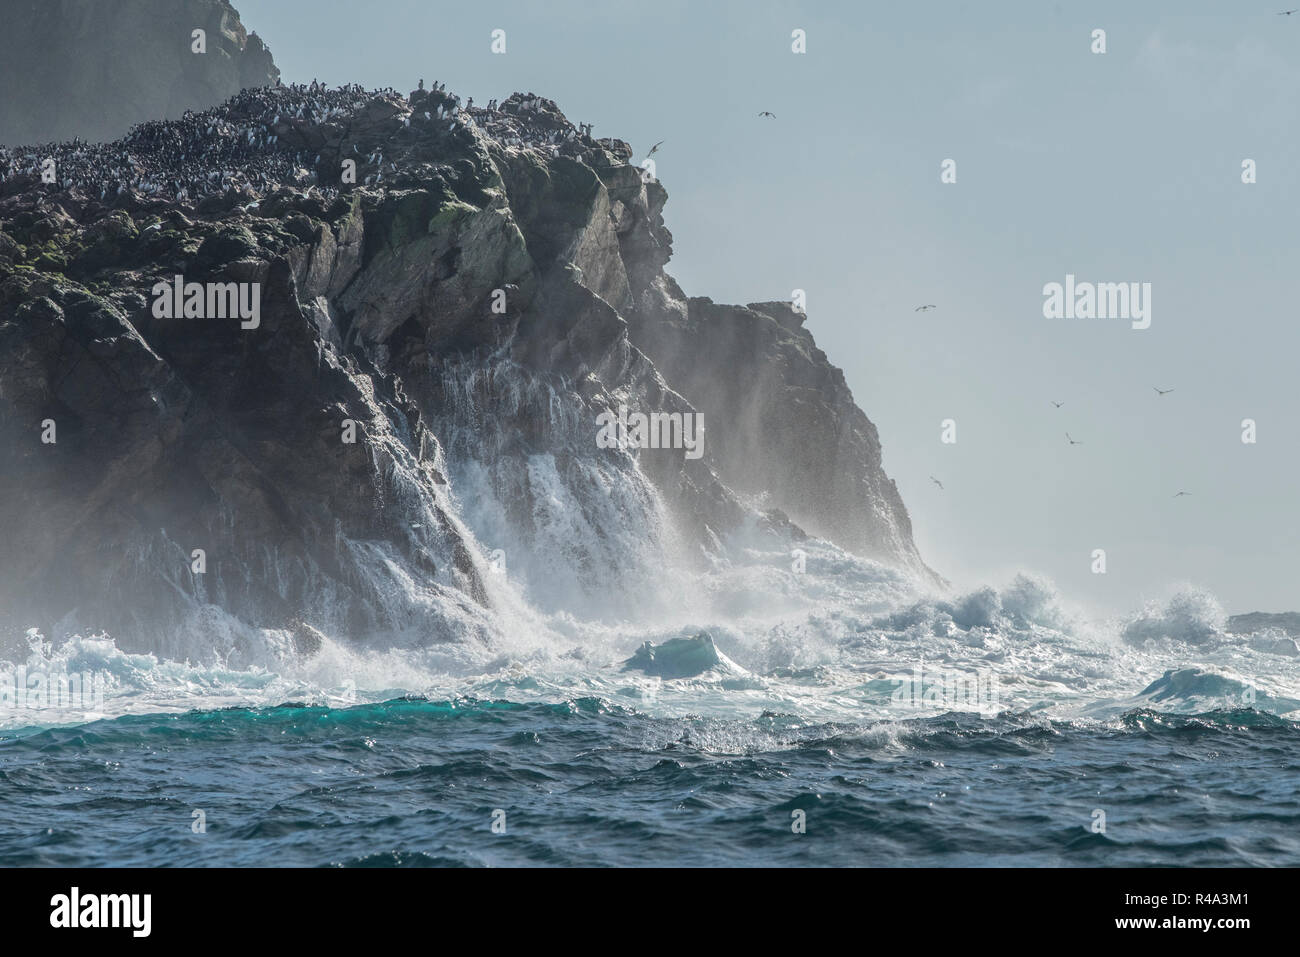 Le onde infrangersi contro la sponda del Farallon isole al largo della costa della California, le isole sono un importante sito di nidificazione per gli uccelli pelagici. Foto Stock